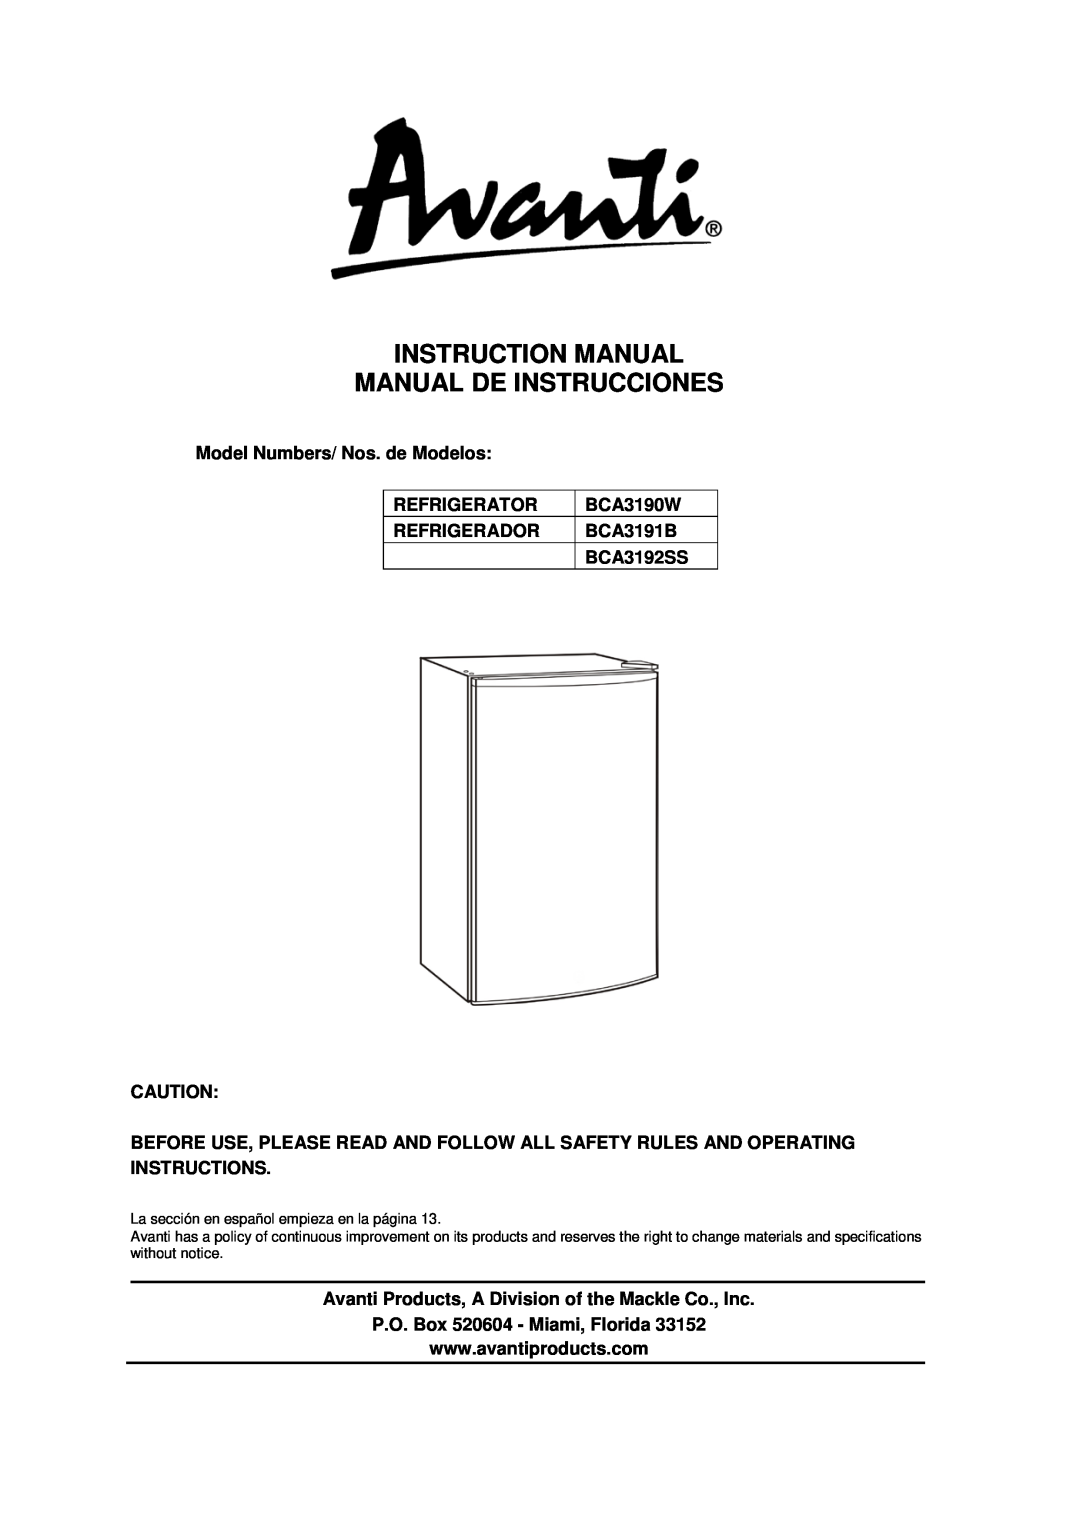 Avanti BCA3191B instruction manual Model Numbers/ Nos. de Modelos, Refrigerator, BCA3190W, Refrigerador, BCA3192SS 